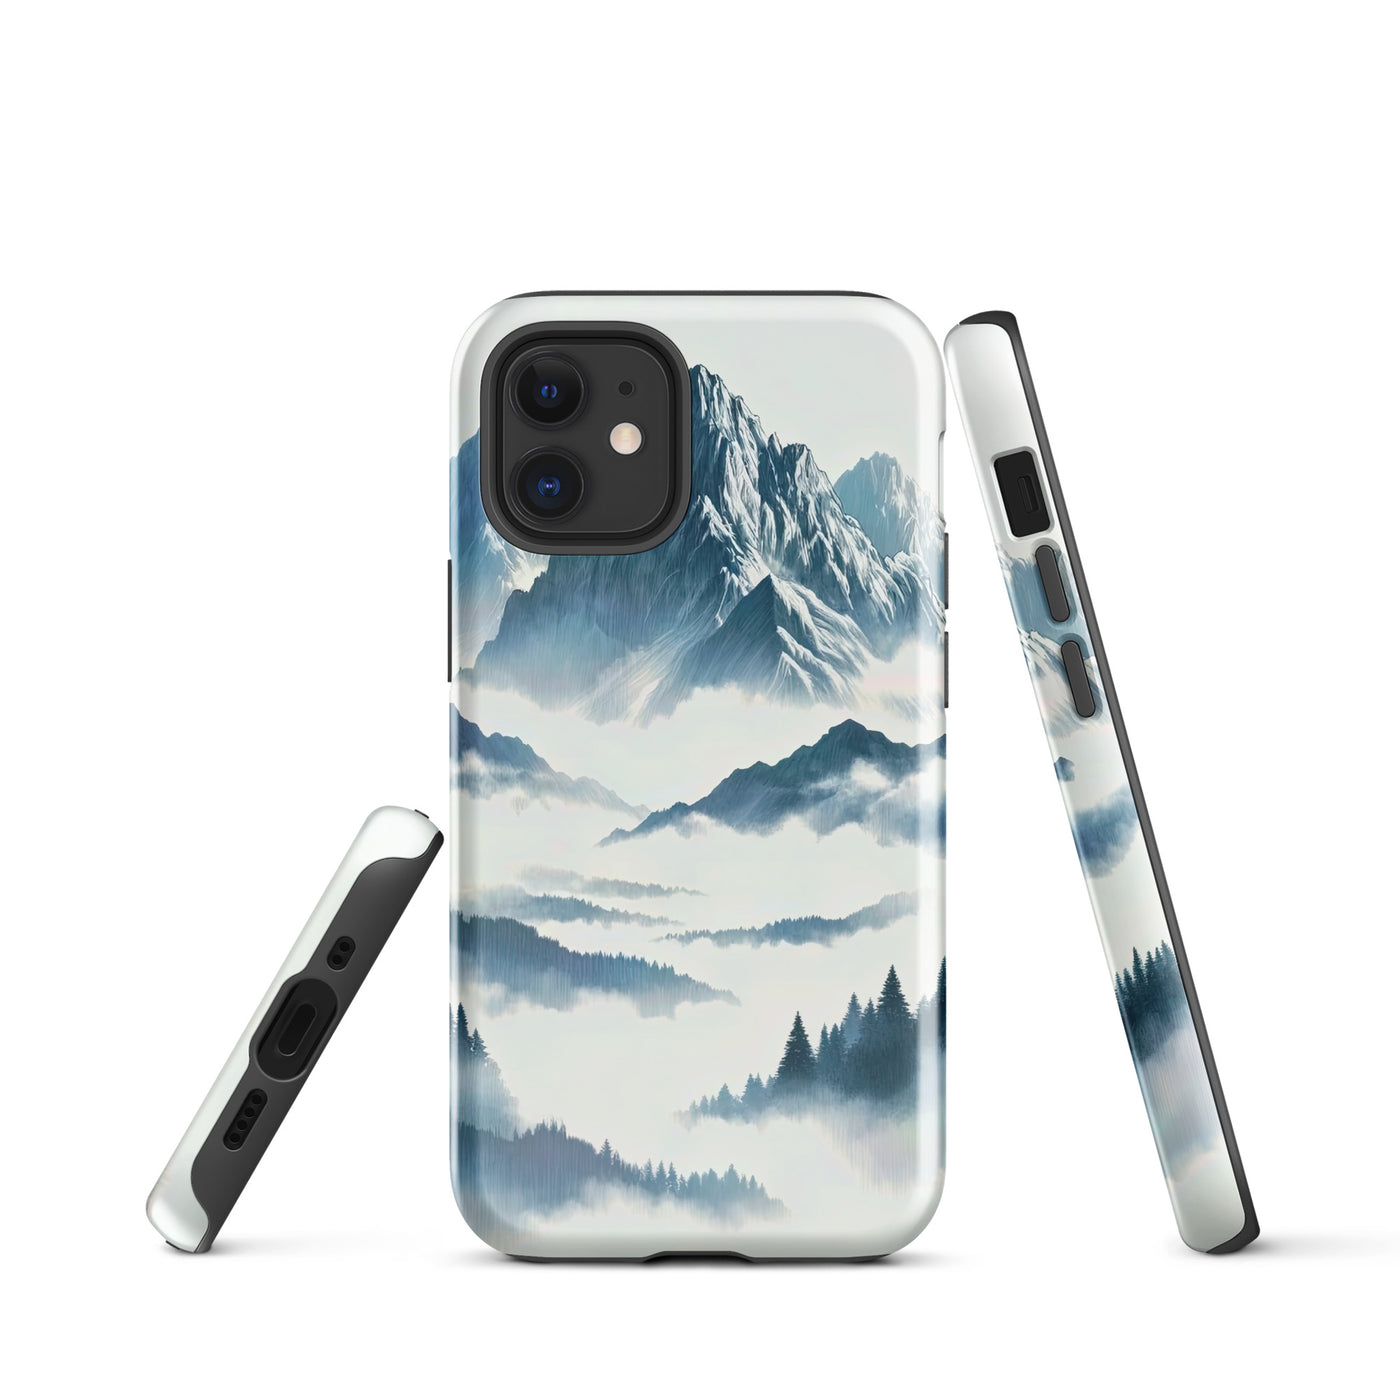 Nebeliger Alpenmorgen-Essenz, verdeckte Täler und Wälder - iPhone Schutzhülle (robust) berge xxx yyy zzz iPhone 12 mini